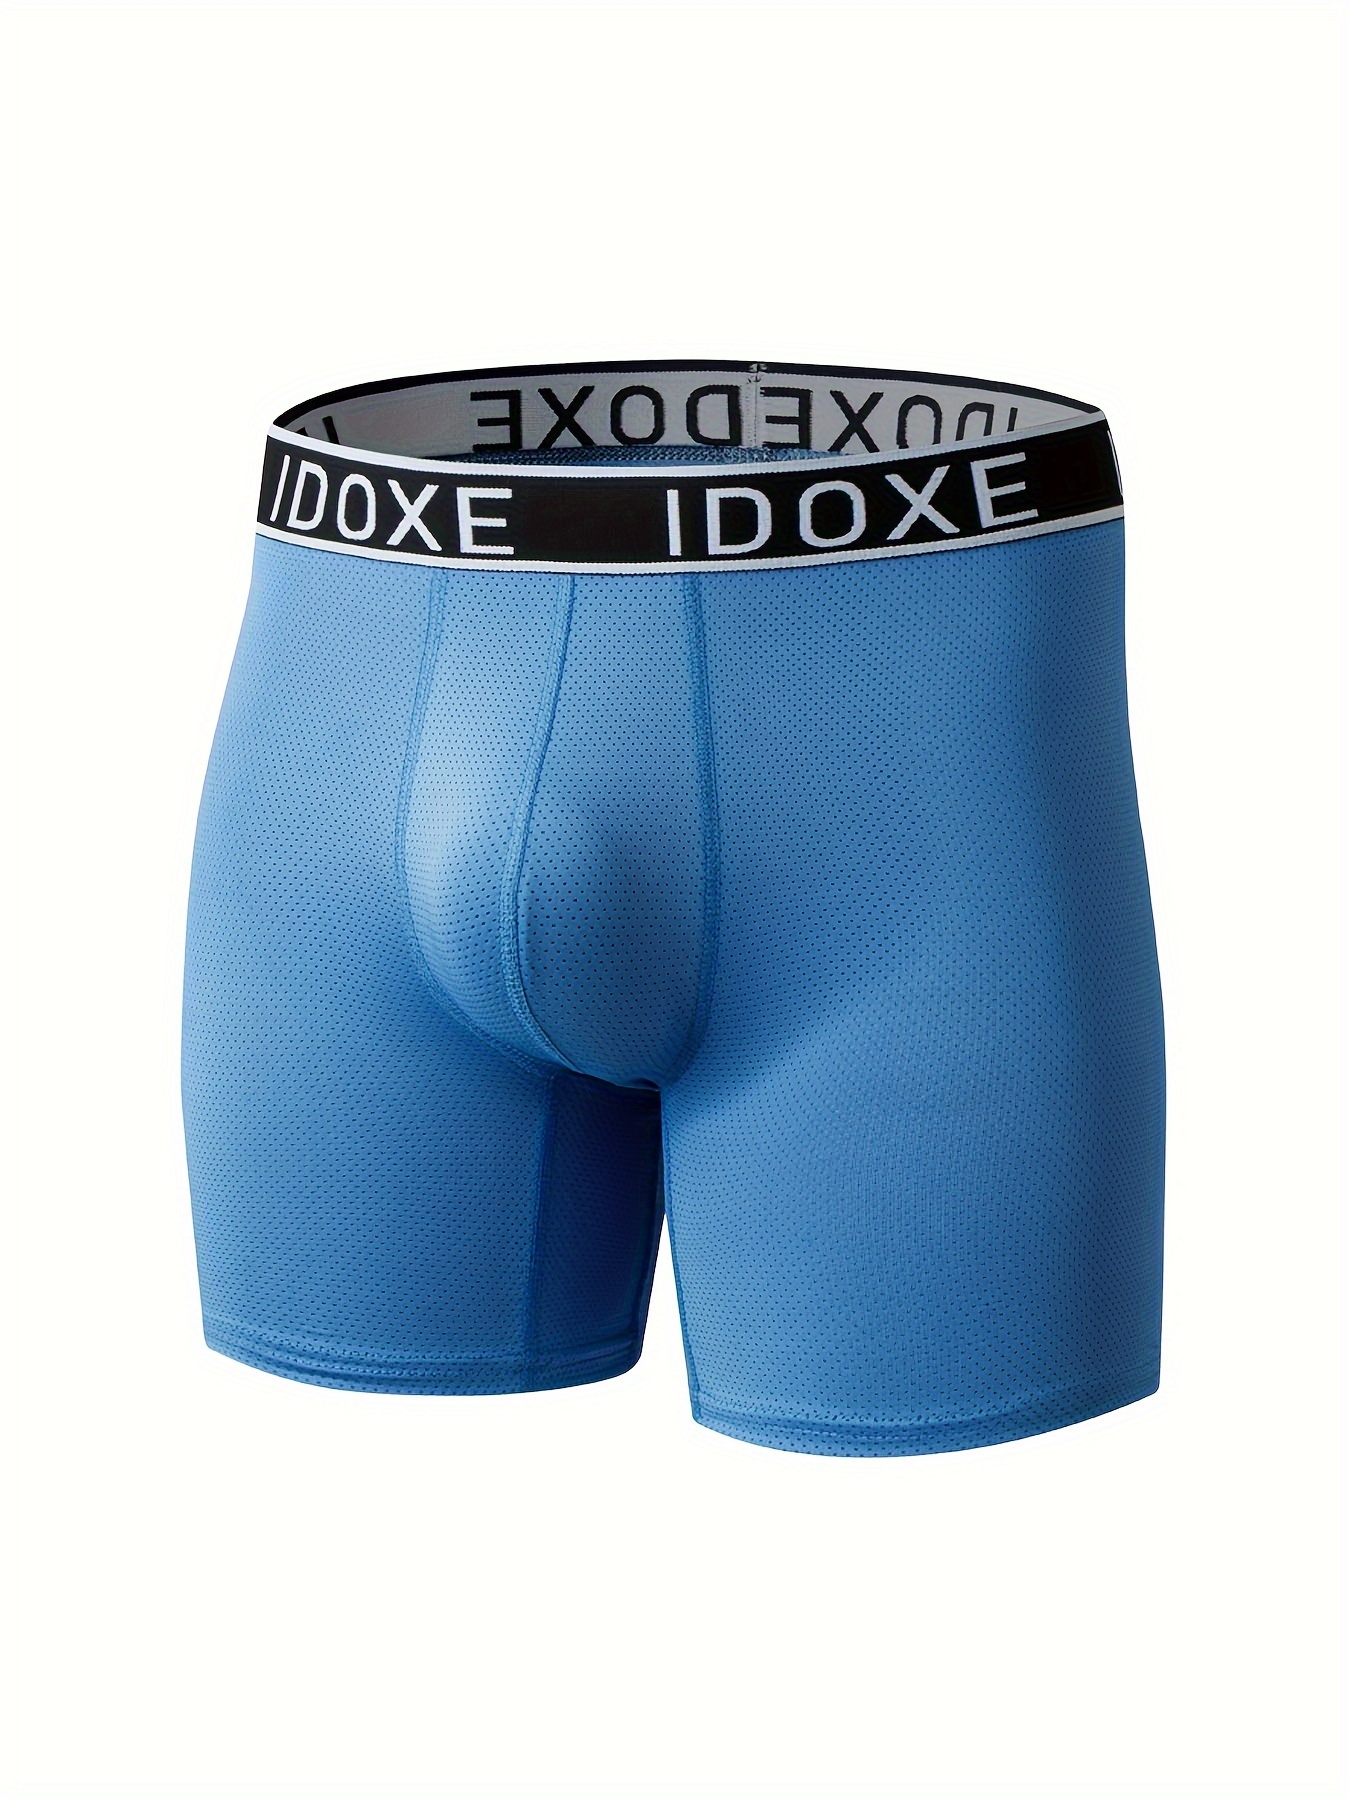 Plus Size Men's Boxer Briefs Quick Dry Sport Athletic Mesh